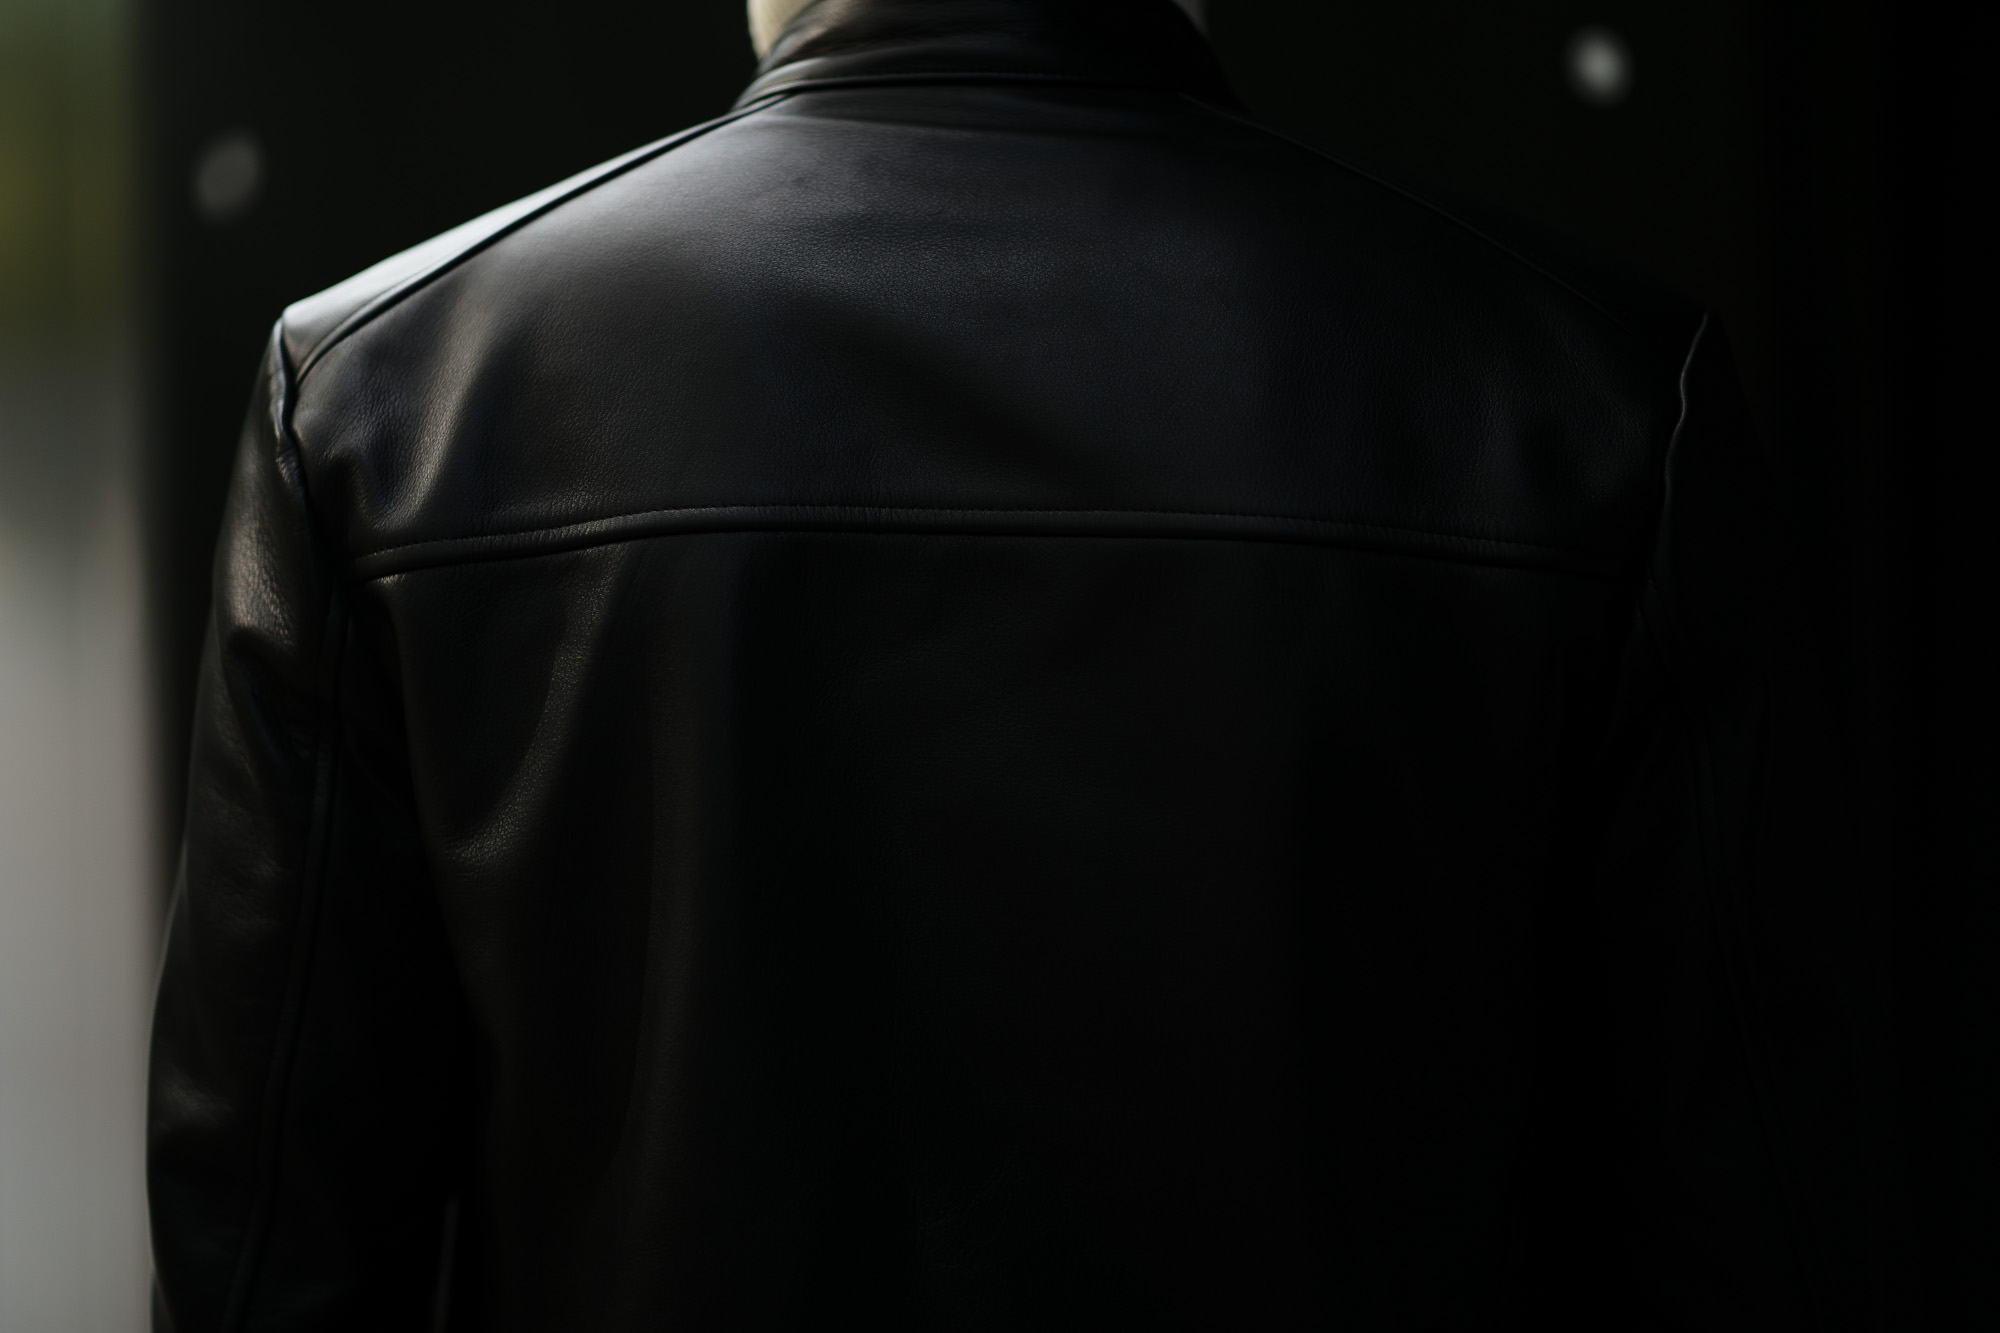 FIXER(フィクサー) F1(エフワン) DOUBLE RIDERS Cow Leather ダブルライダース ジャケット BLACK(ブラック) 【ご予約受付中】【2019.10.19(Sat)～2019.11.3(Sun)】愛知 名古屋 altoediritto アルトエデリット